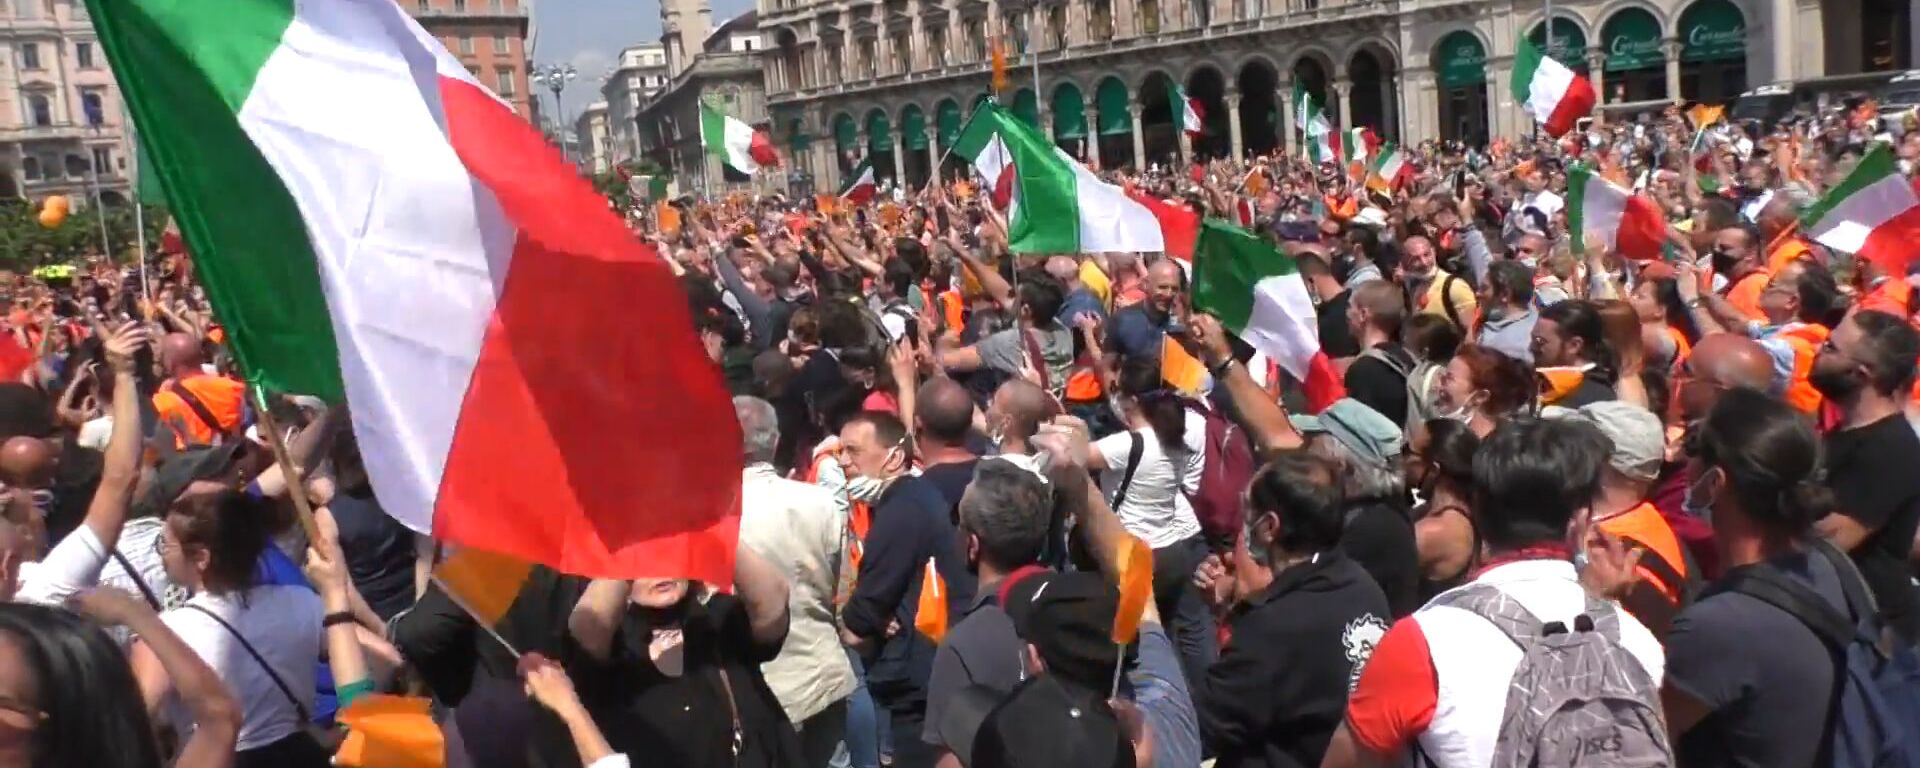 Оранжевые жилеты: Италию захлестнула волна протестов против правительства - Sputnik Латвия, 1920, 04.06.2020